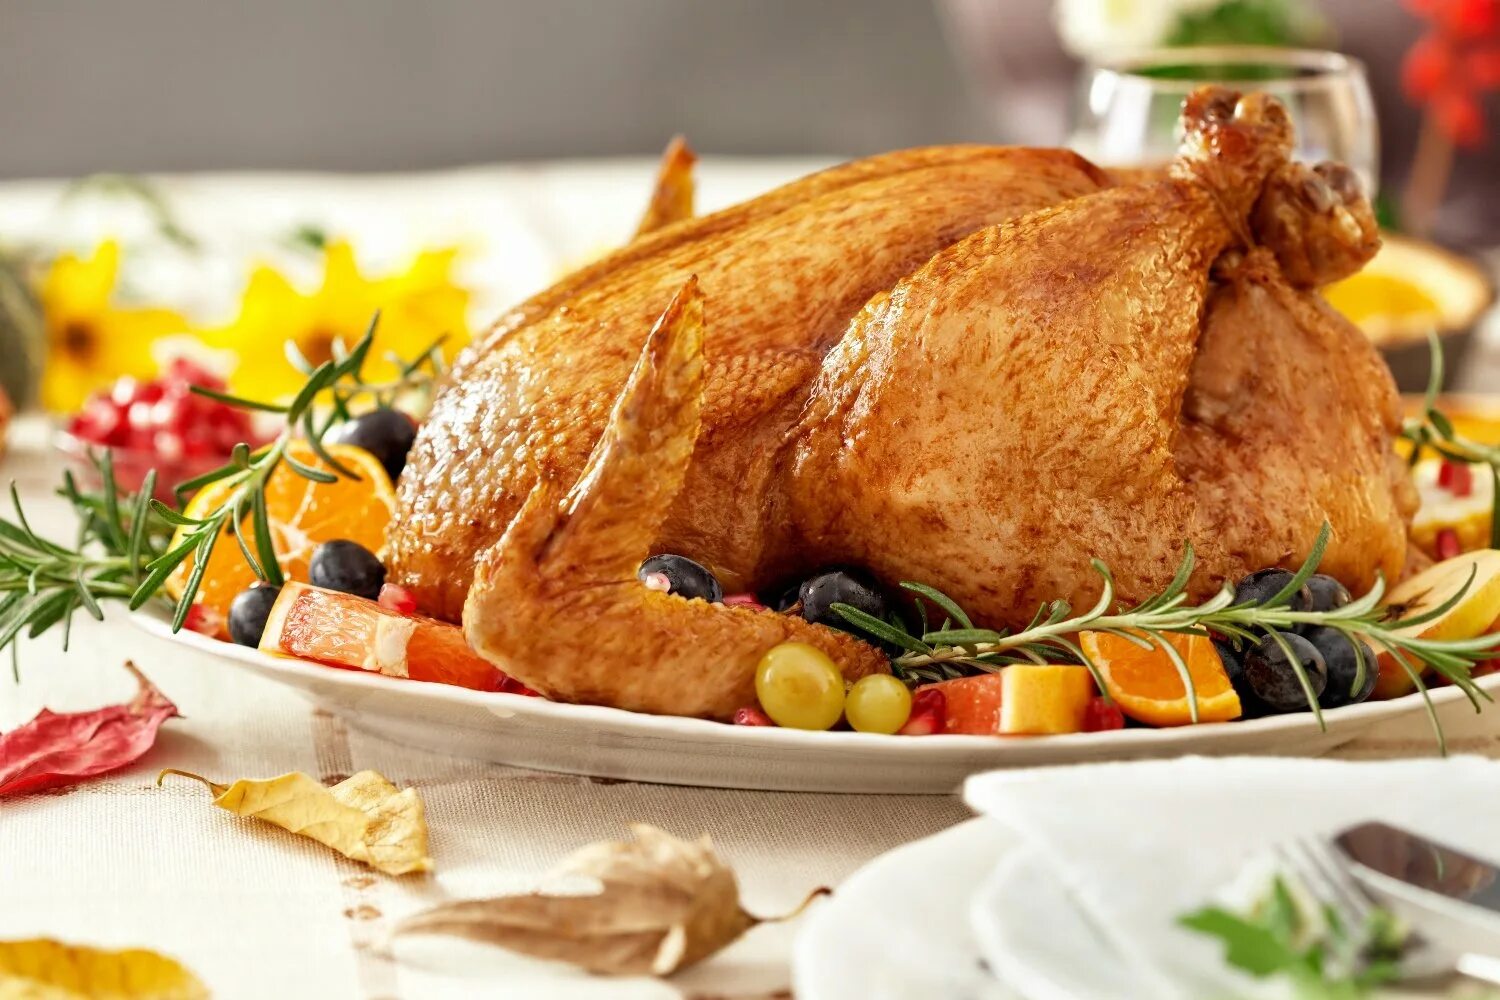 Thanksgiving turkey. Turkey индейка. Индейка запеченная в духовке. Праздничная курица. Блюда на день Благодарения.